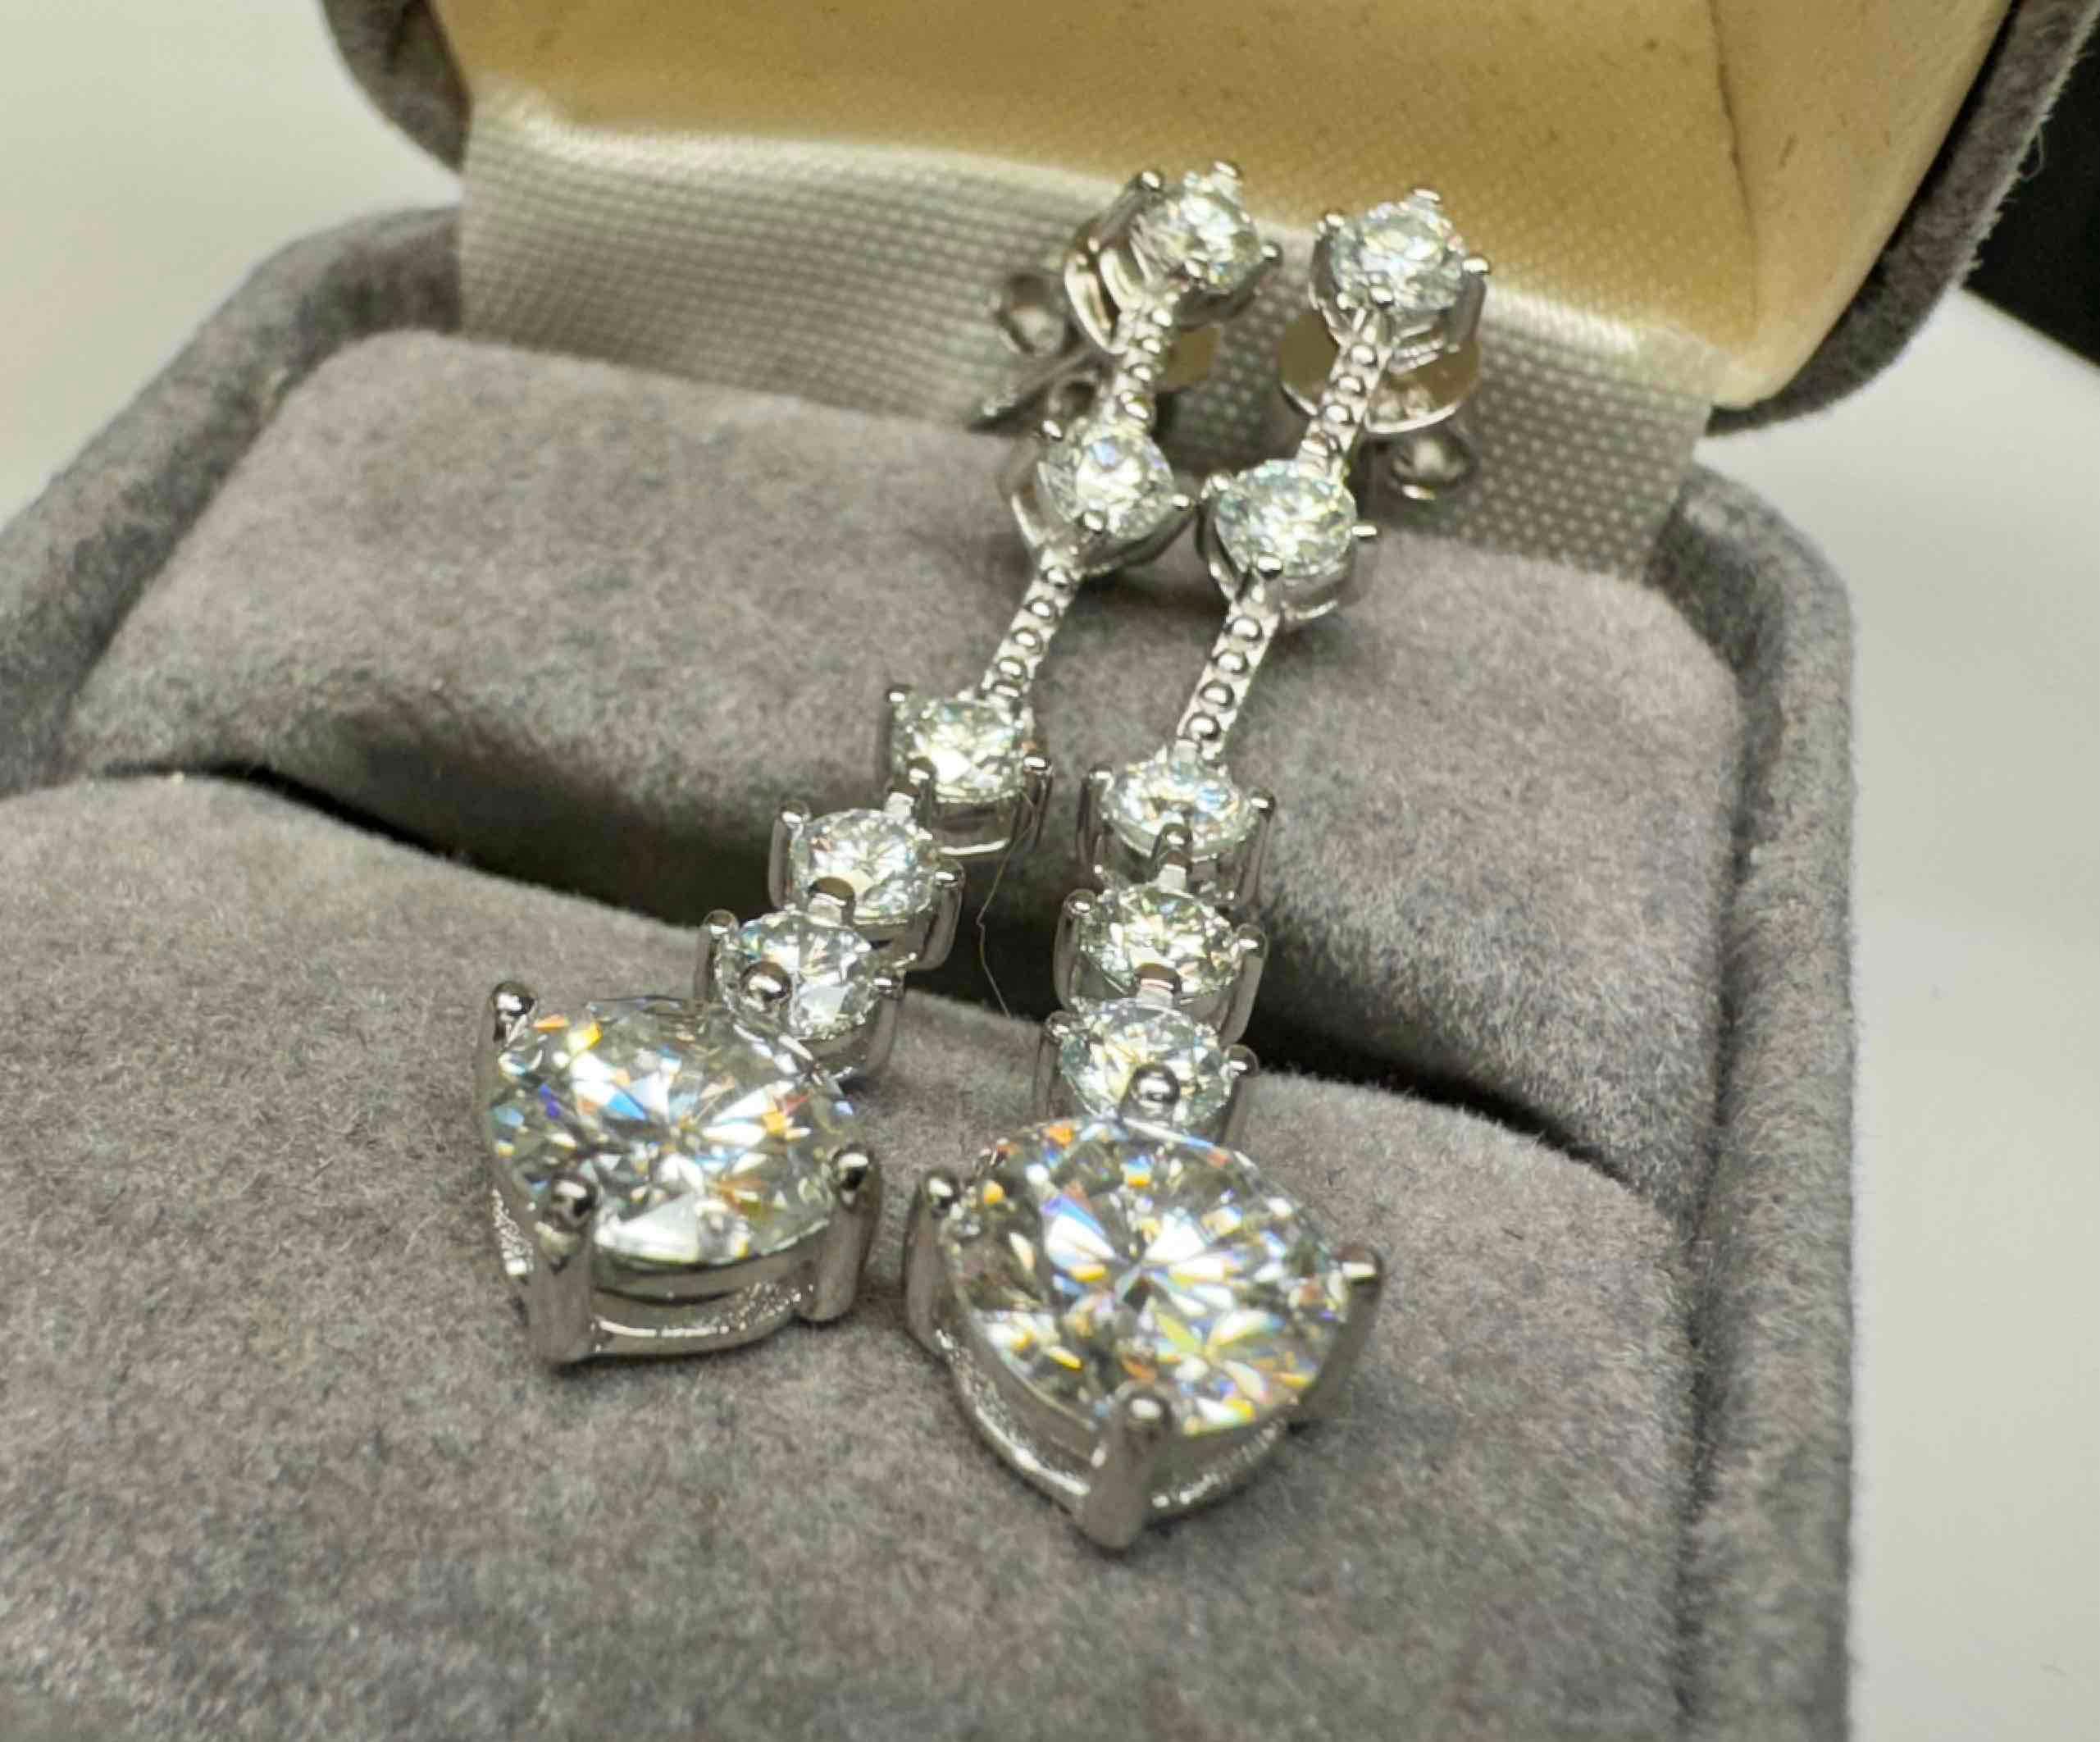 Pair of S925 Sterling Silver Moissanite Diamond Earrings 3.1g total